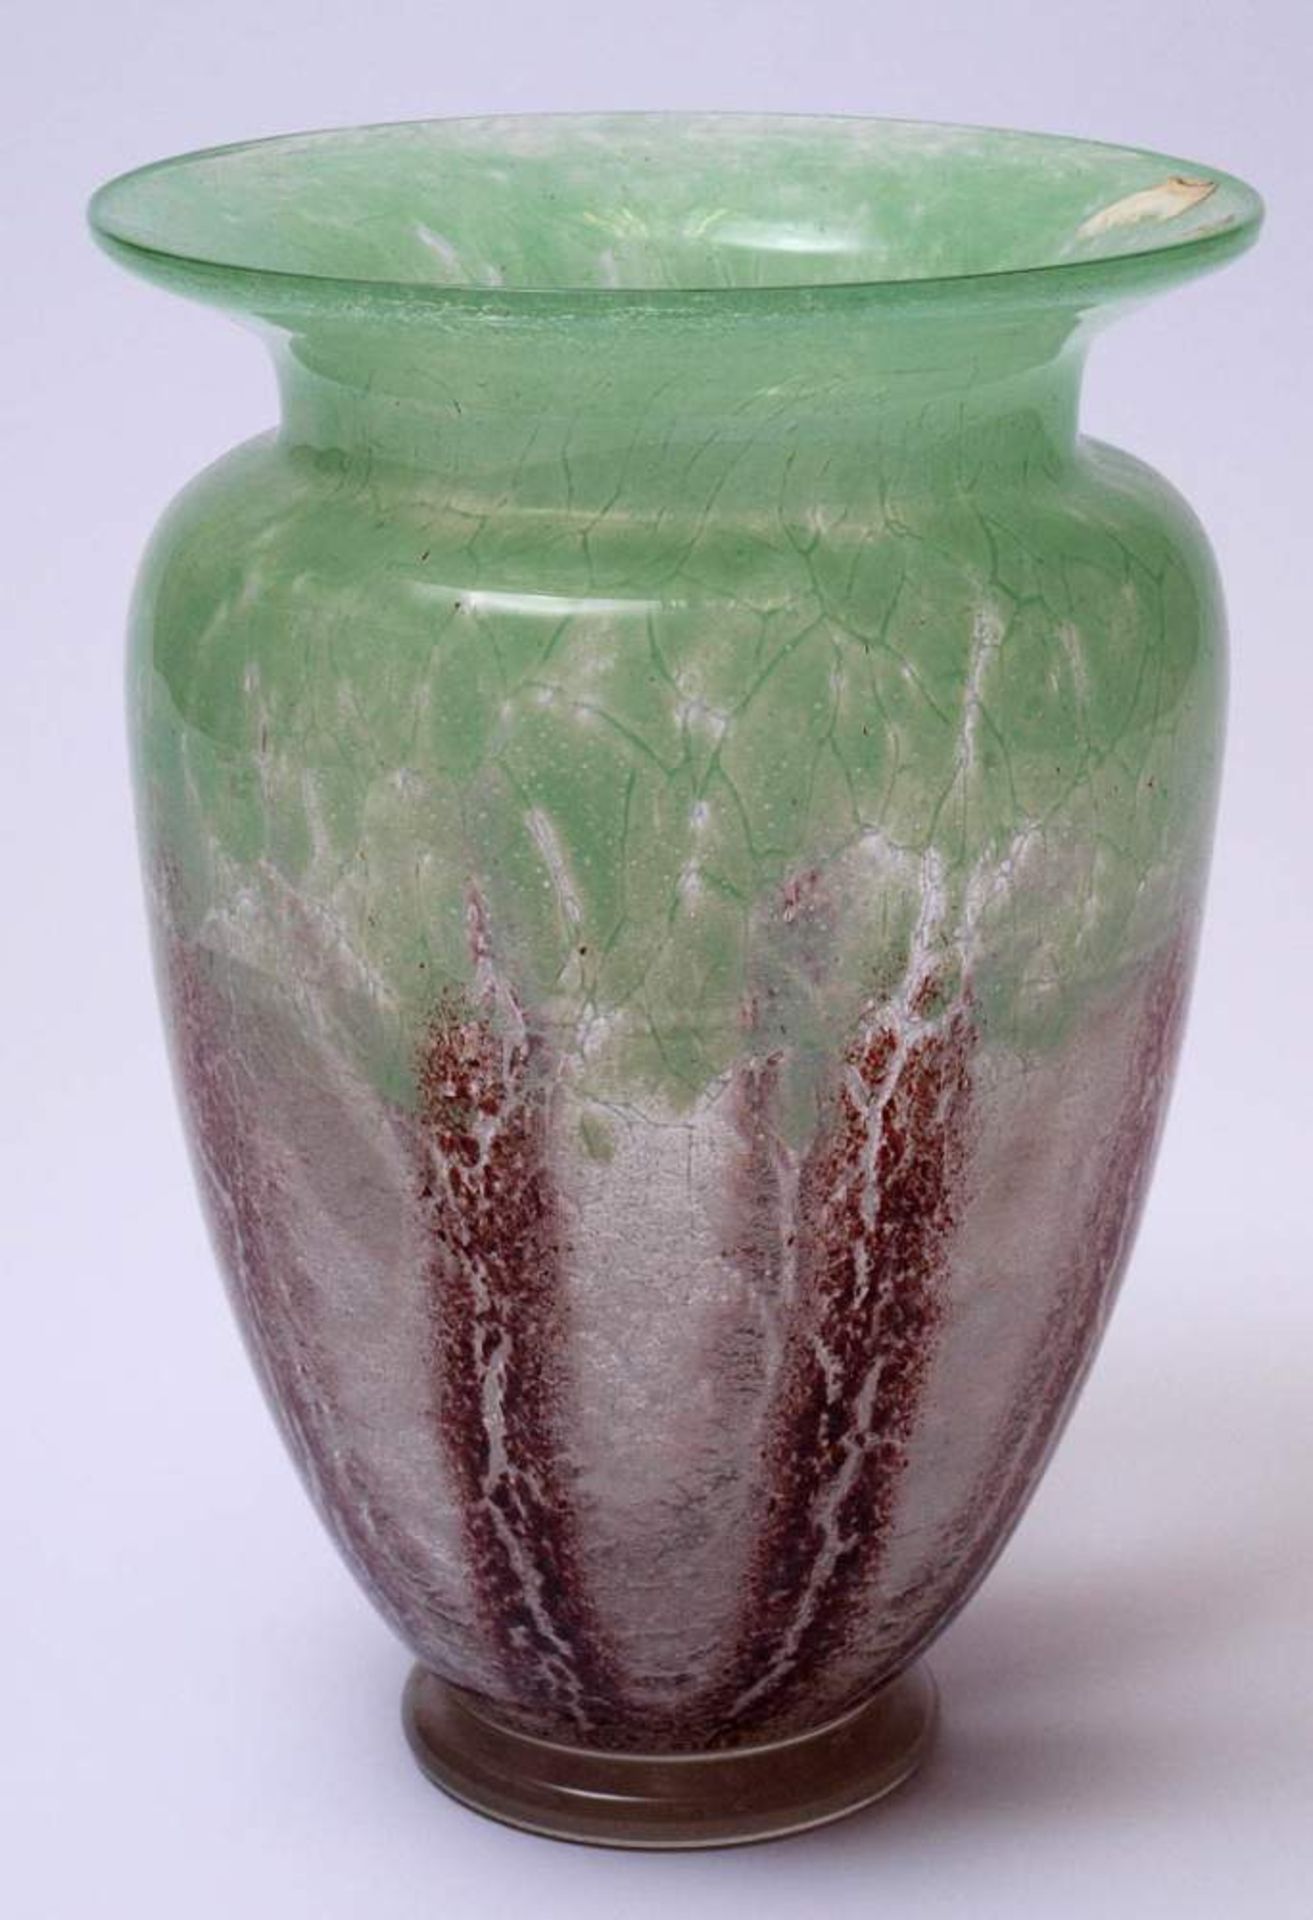 Ikora-Vase, WMFAuf massivem, rundem Standfuß aus farblosem Glas bauchiger Korpus mit eingezogener